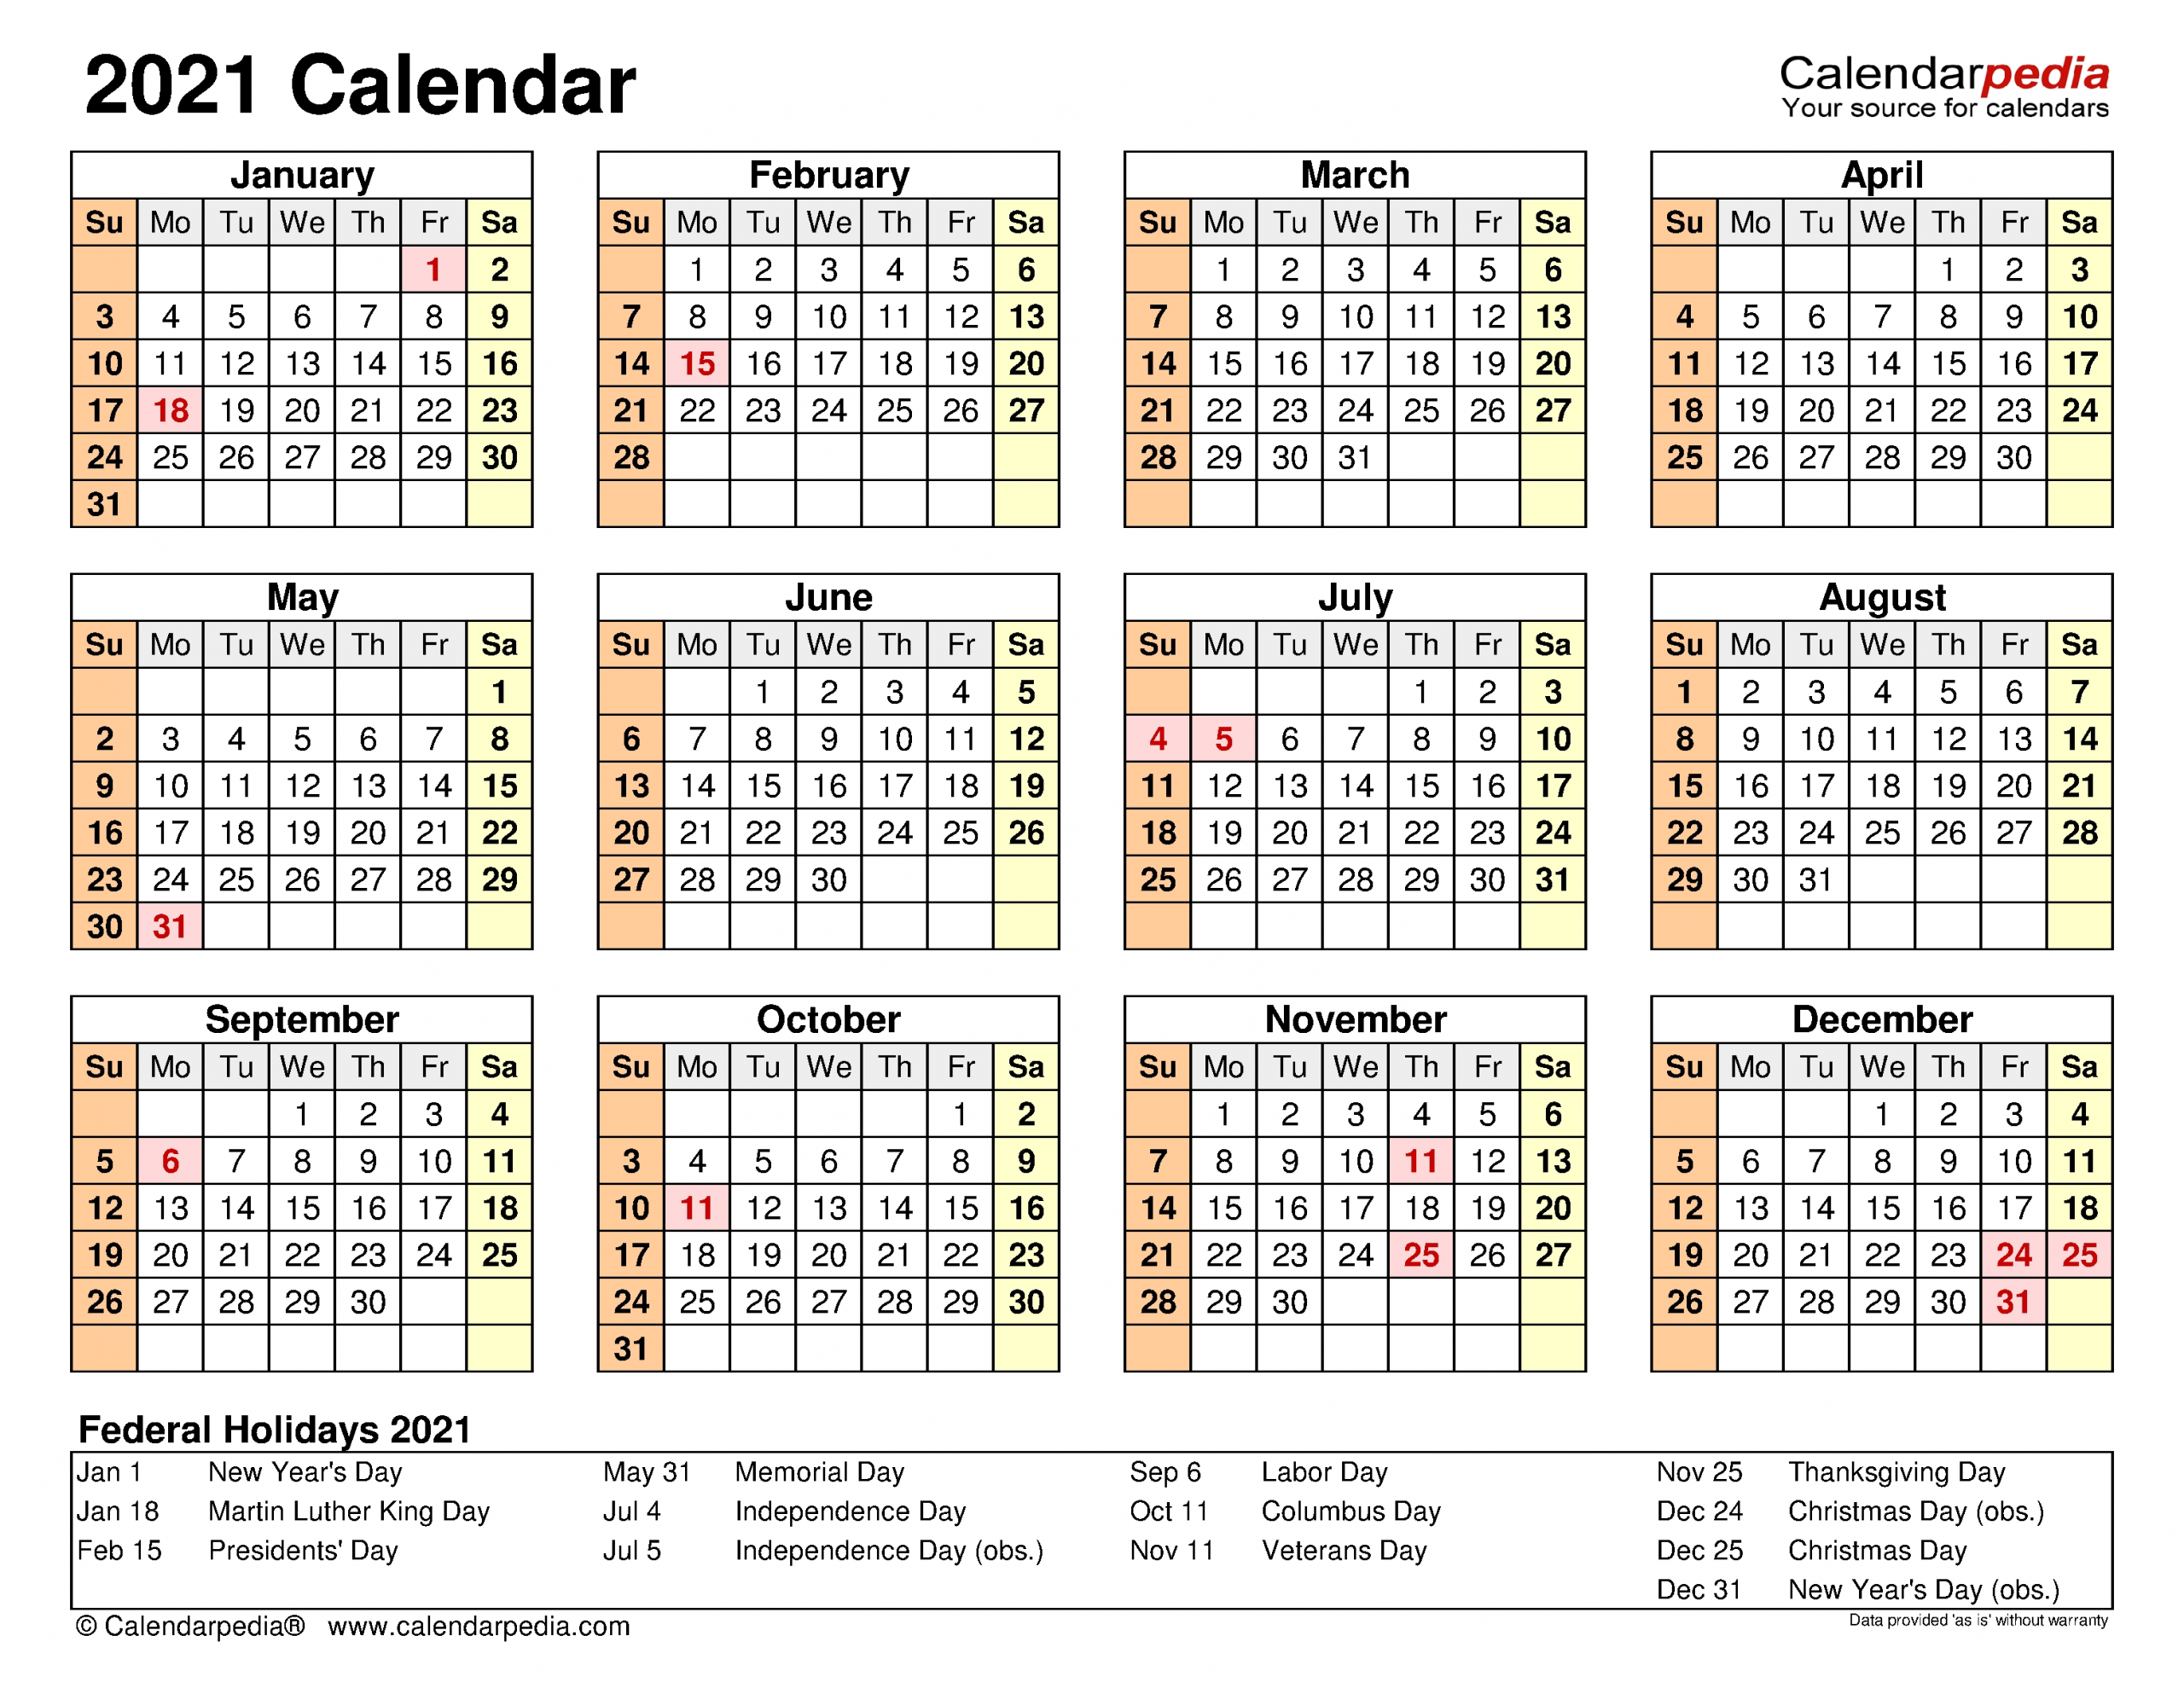 Get 2021 Week Dates Excel